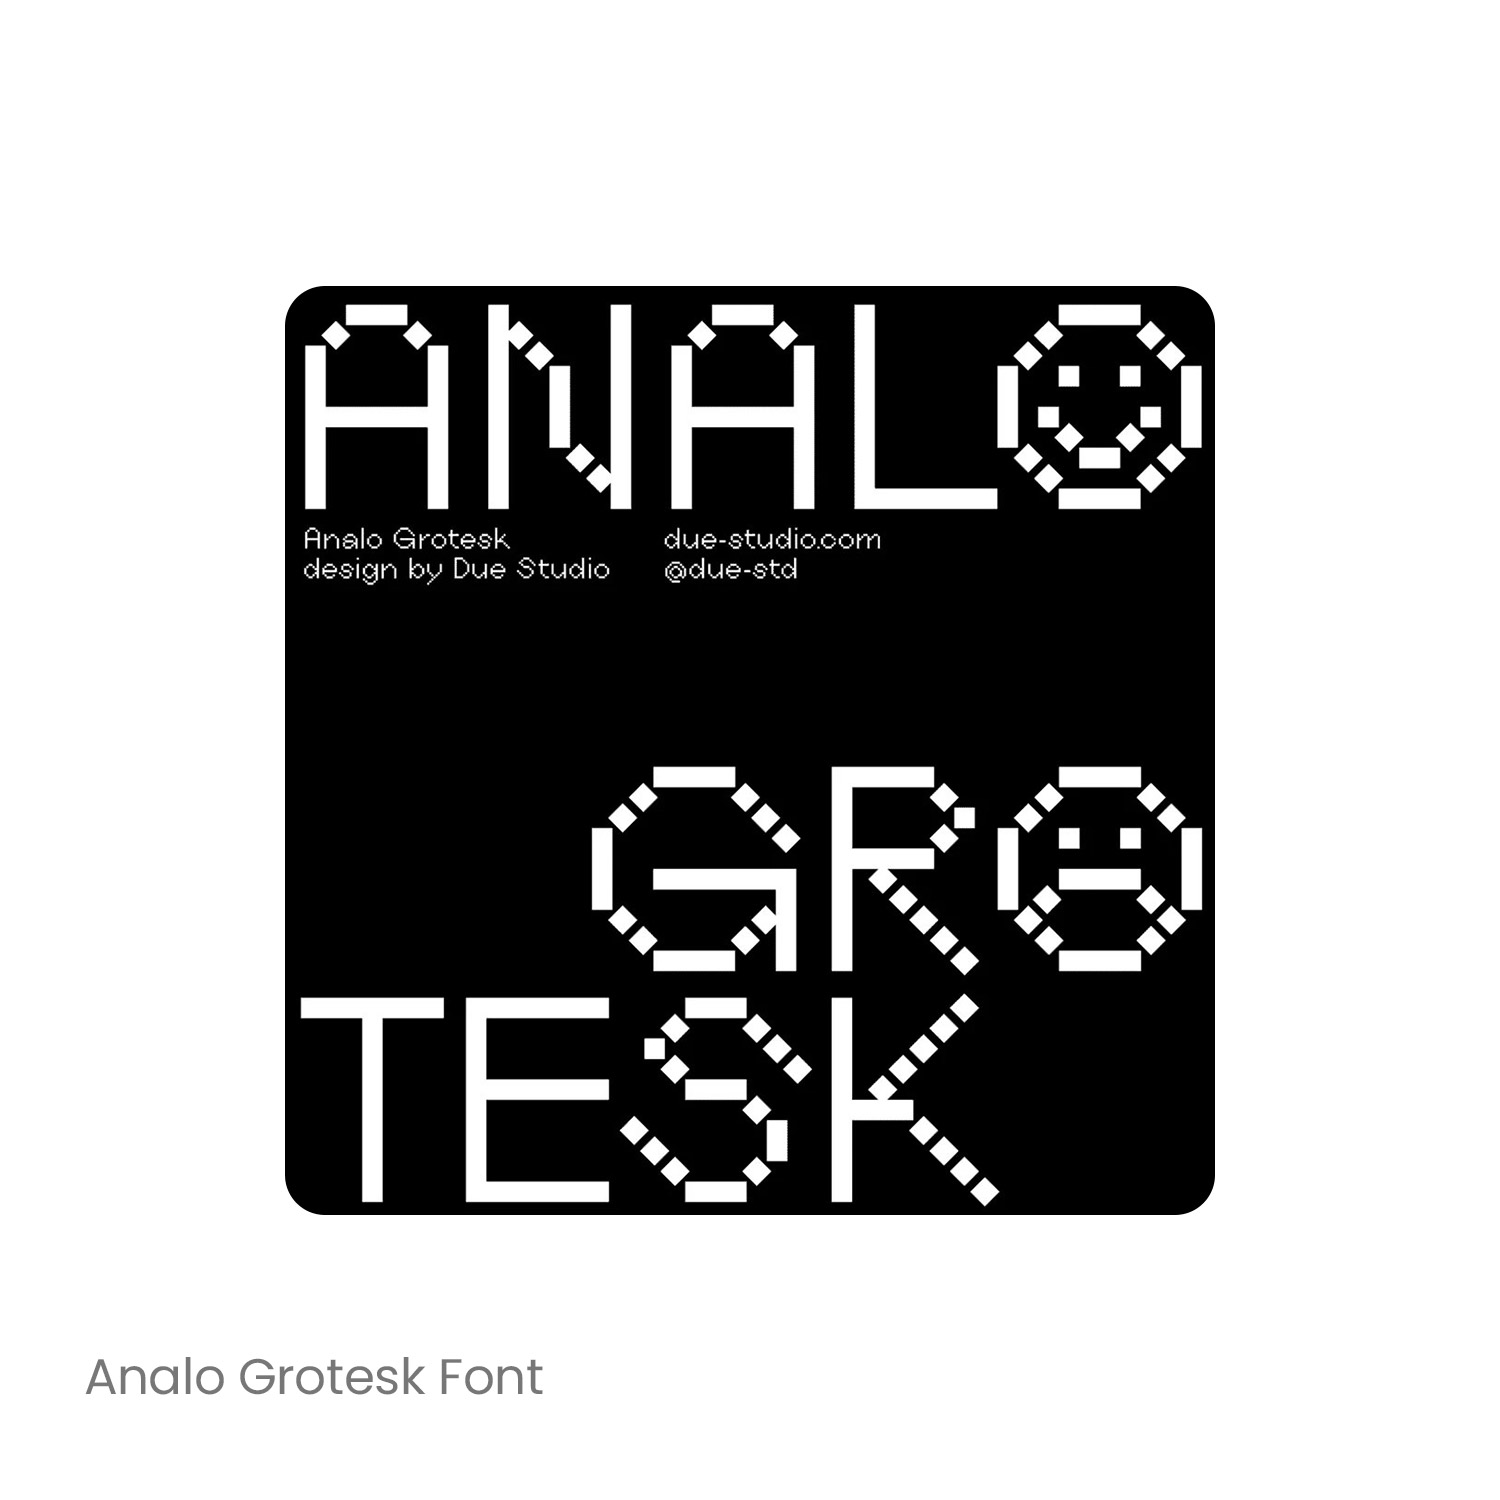 Analo Grotesk 像素化英文字体品牌logo标识排版版式字体安装下载